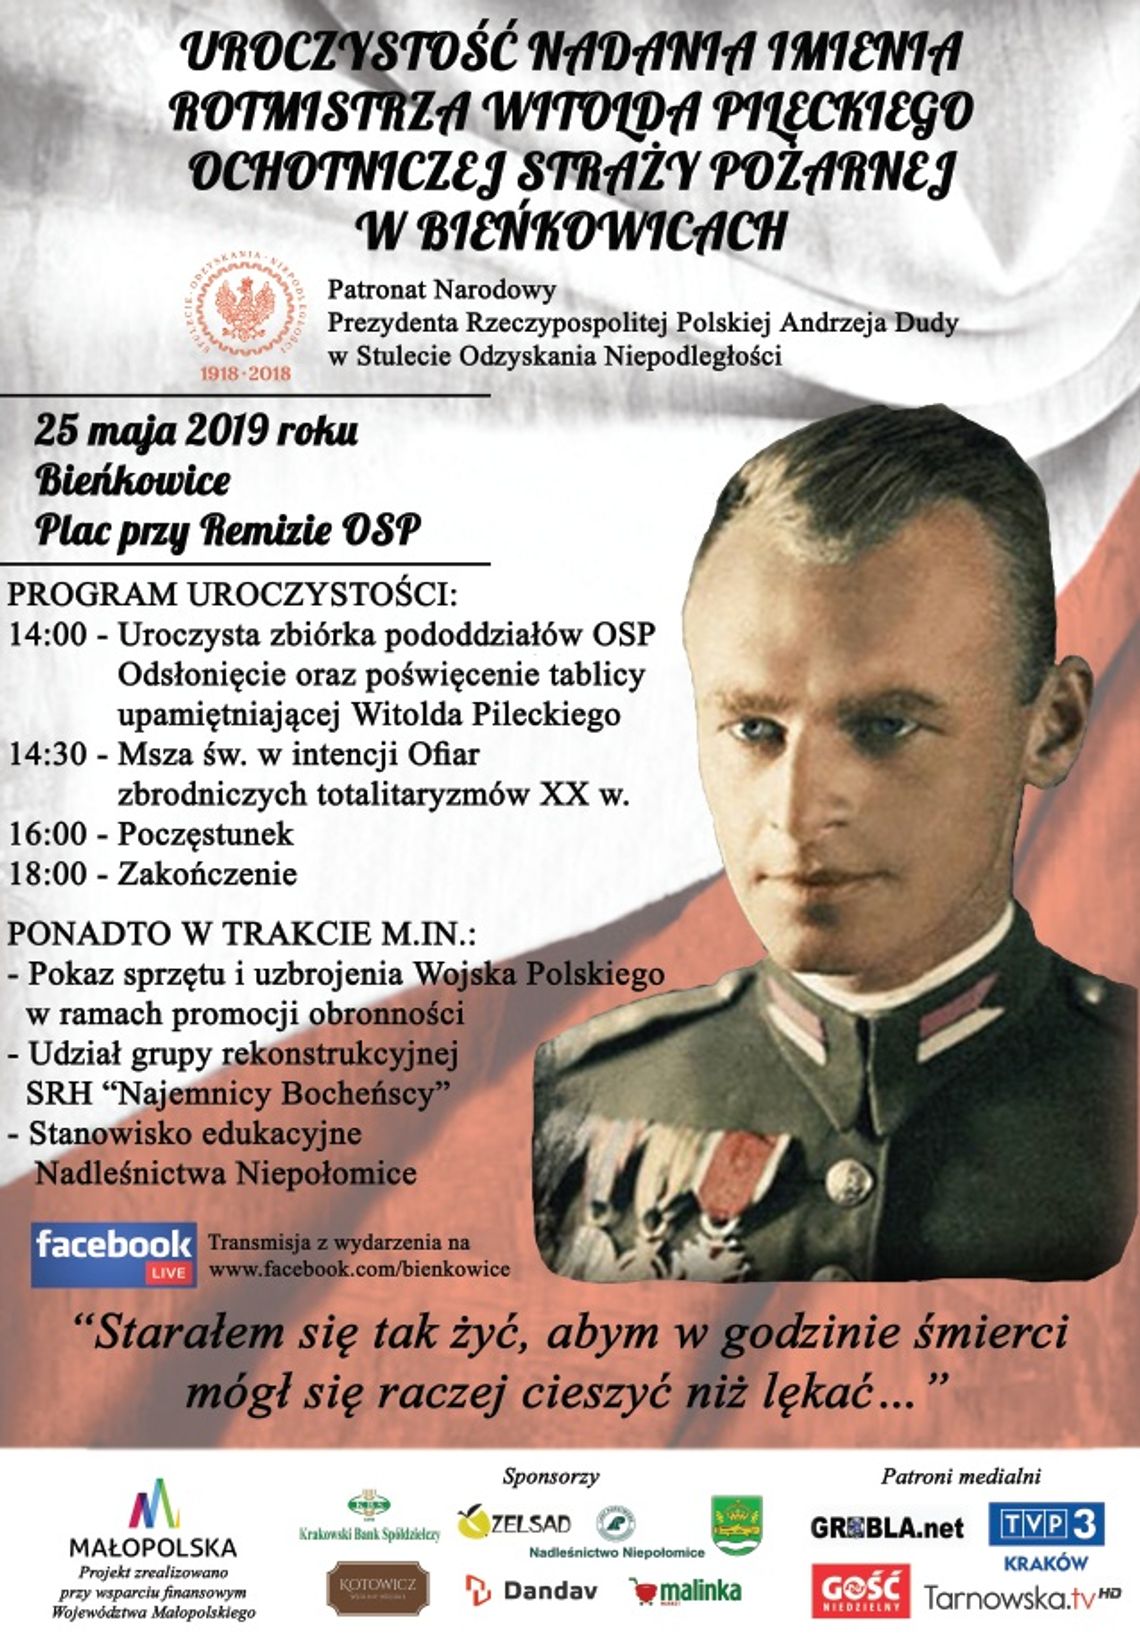 Uroczystość nadania Ochotniczej Straży Pożarnej w Bieńkowicach imienia Rotmistrza Witolda Pileckiego